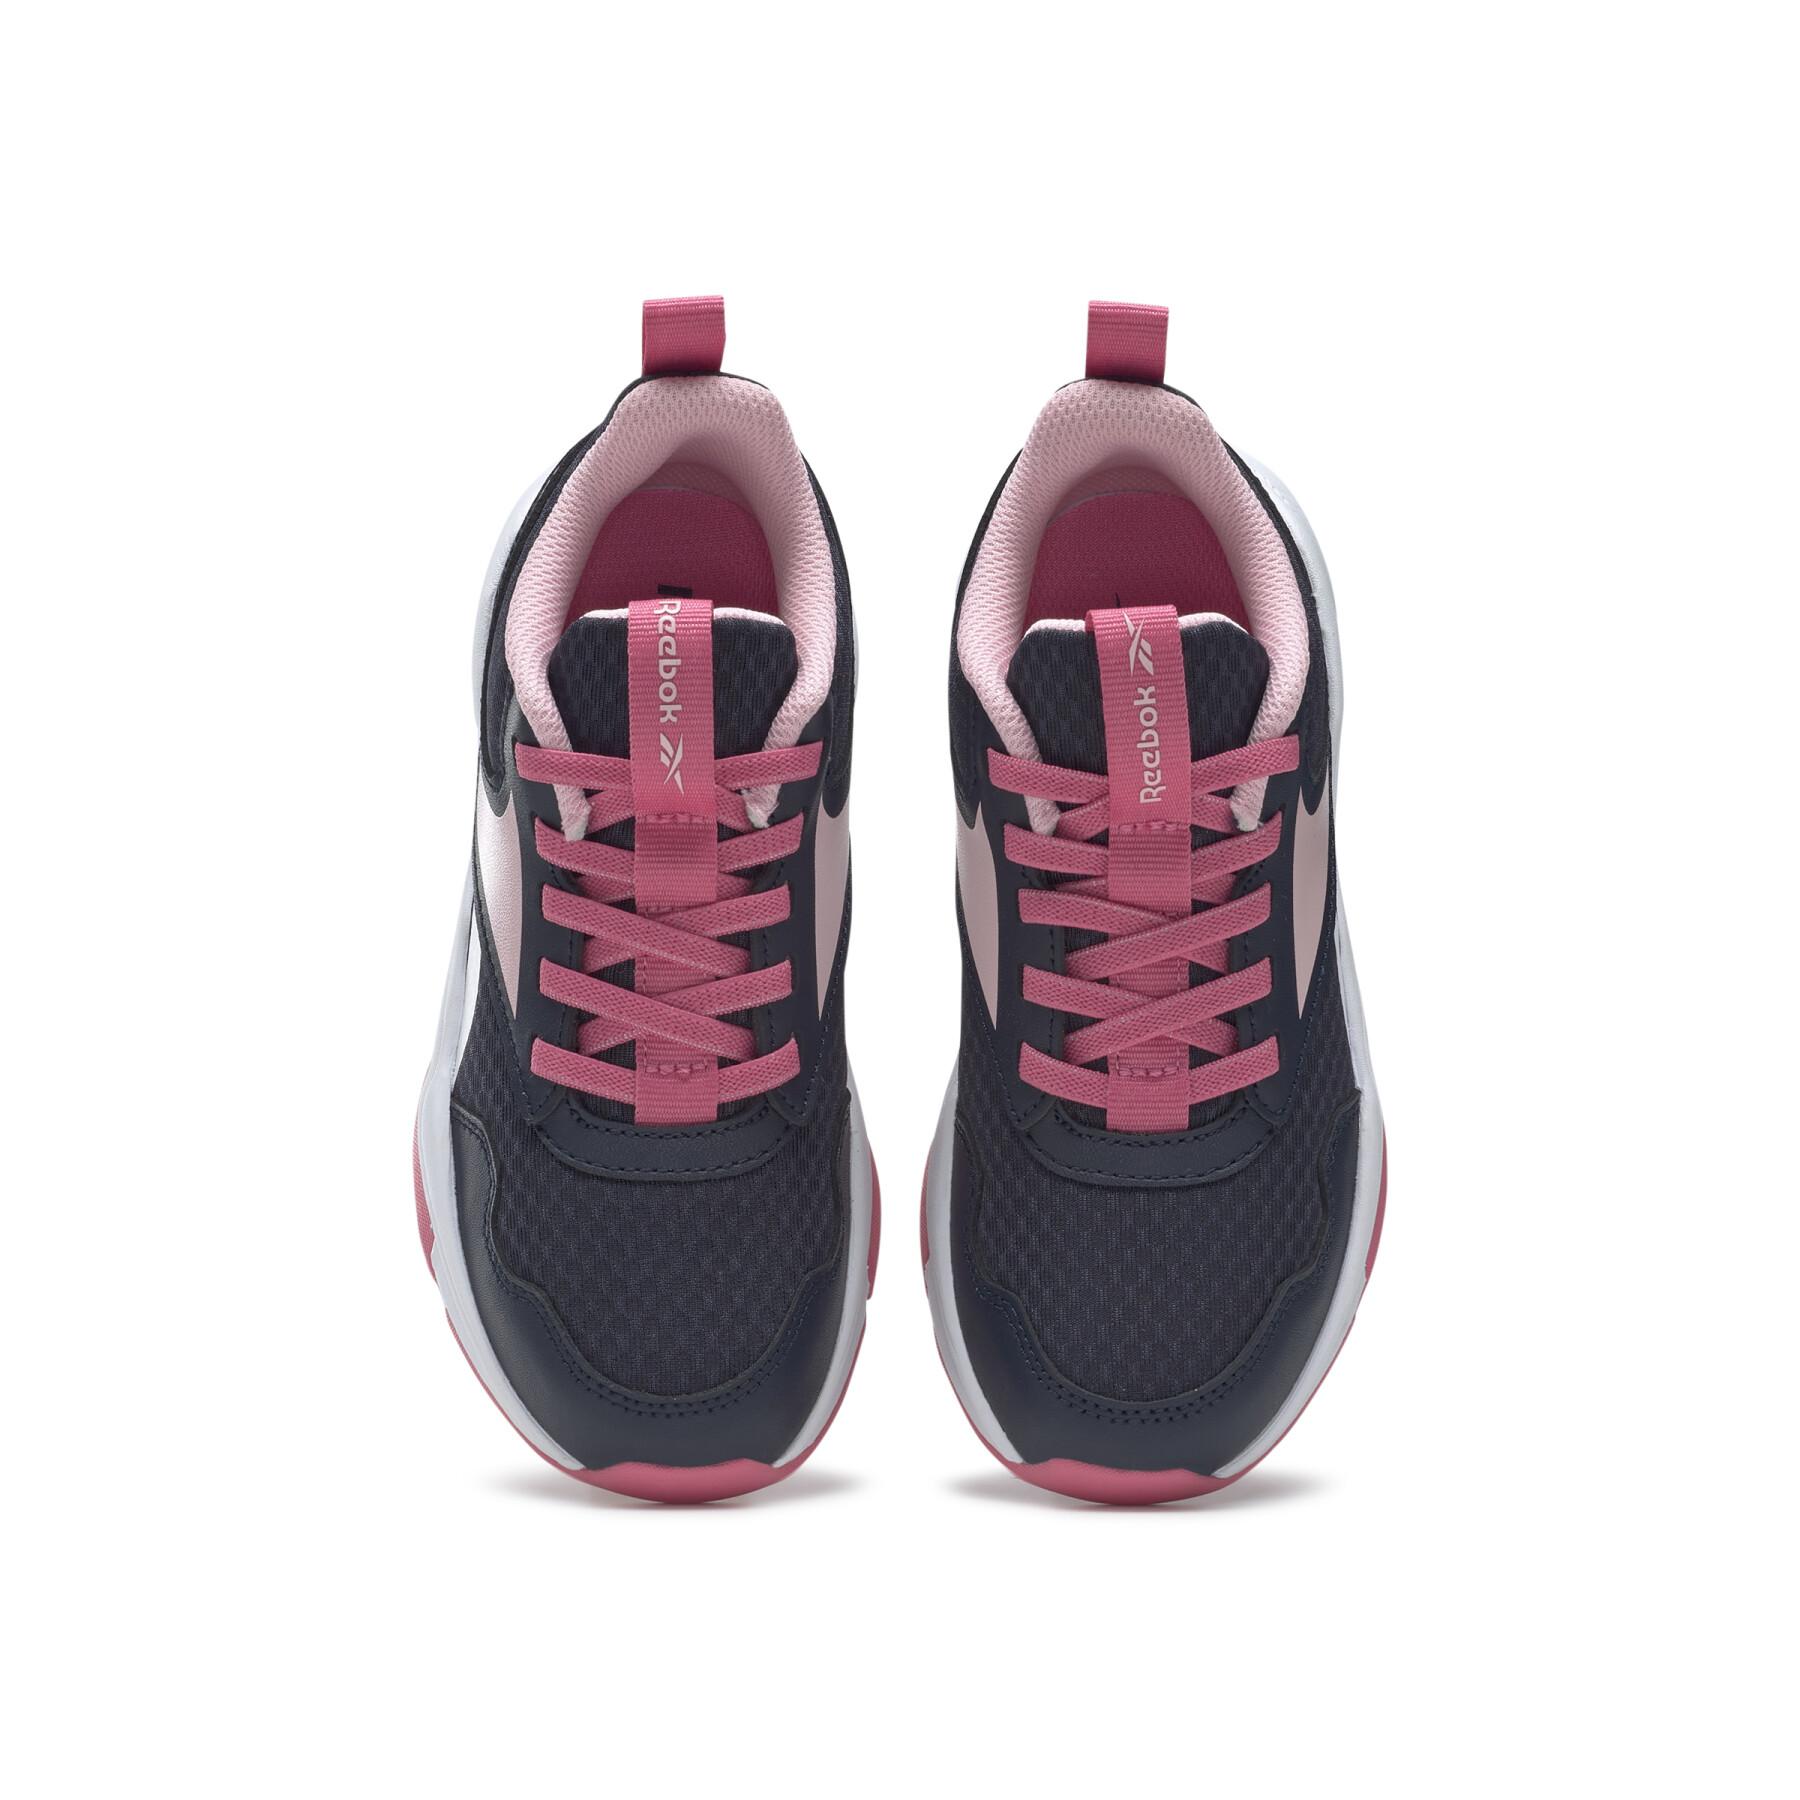 Zapatillas de deporte para chicas Reebok Xt Sprinter 2